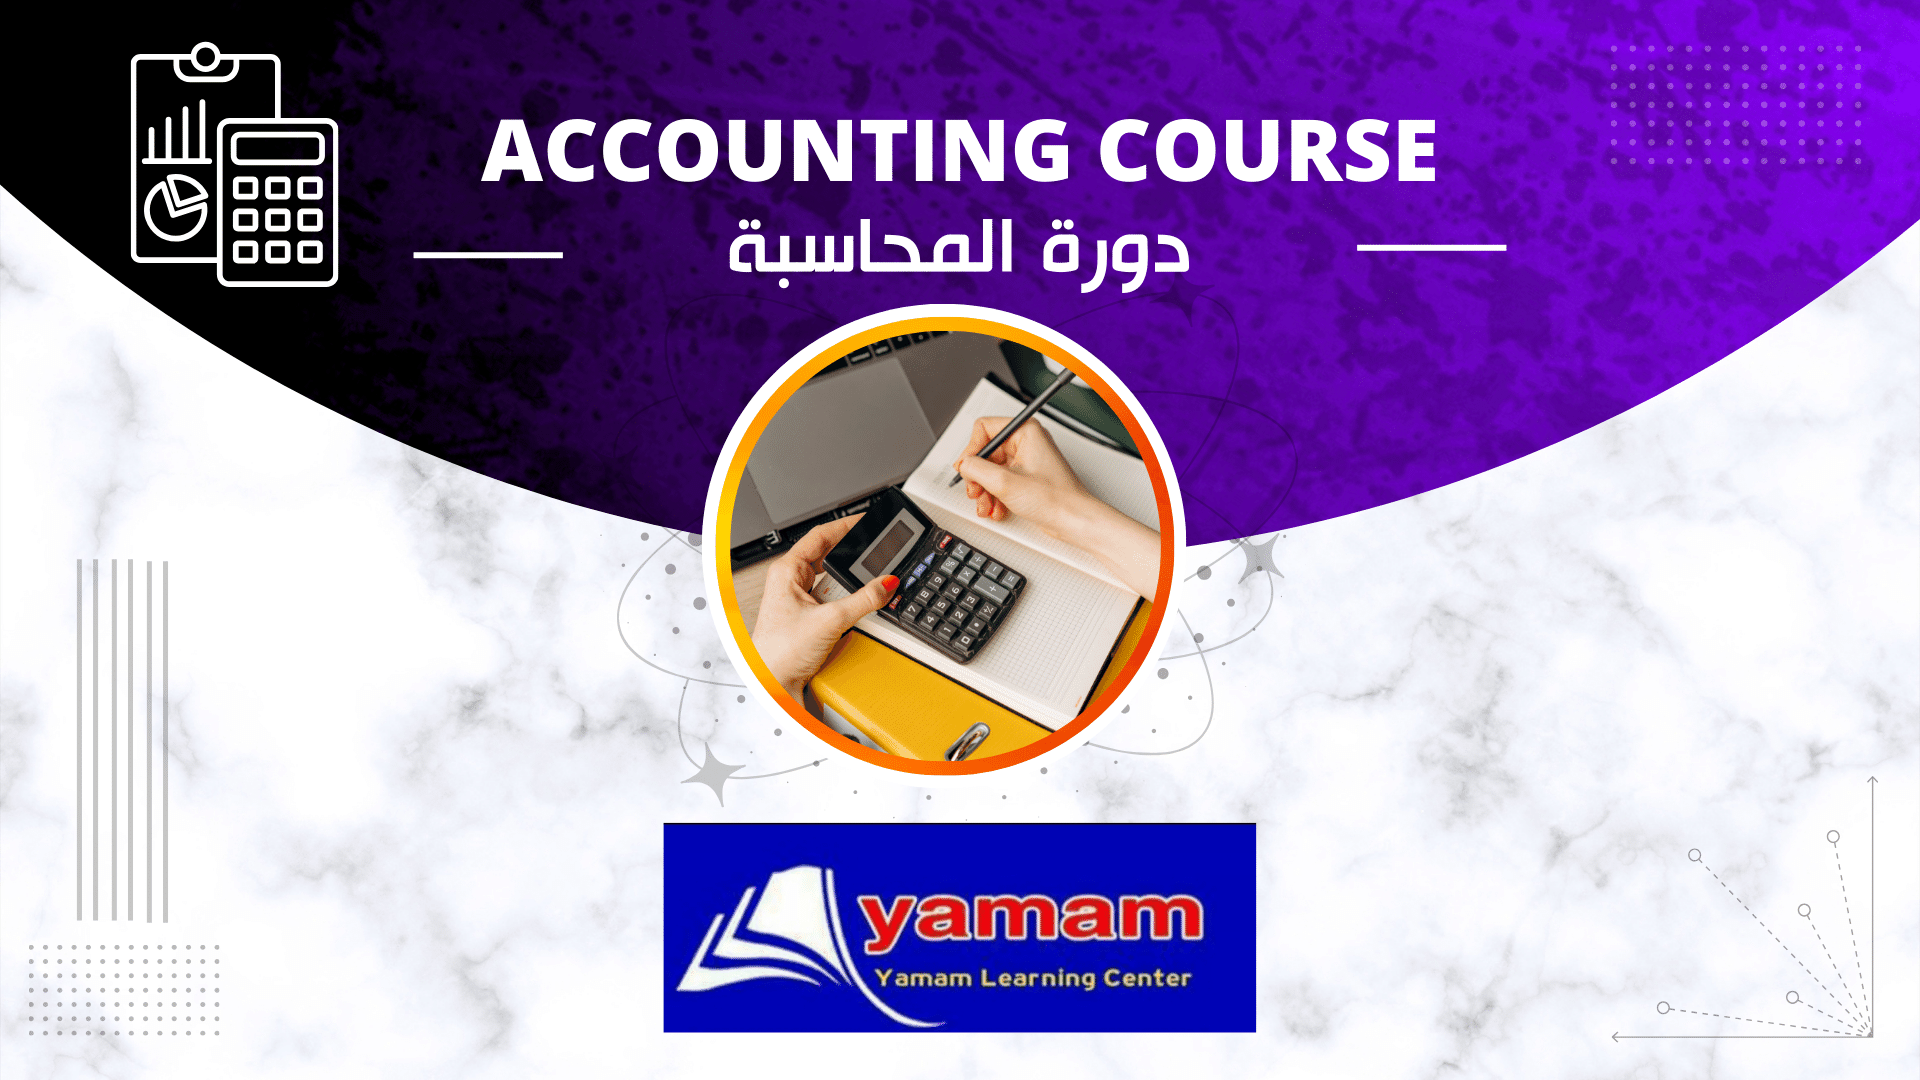 دورة المحاسبة - Accounting Course